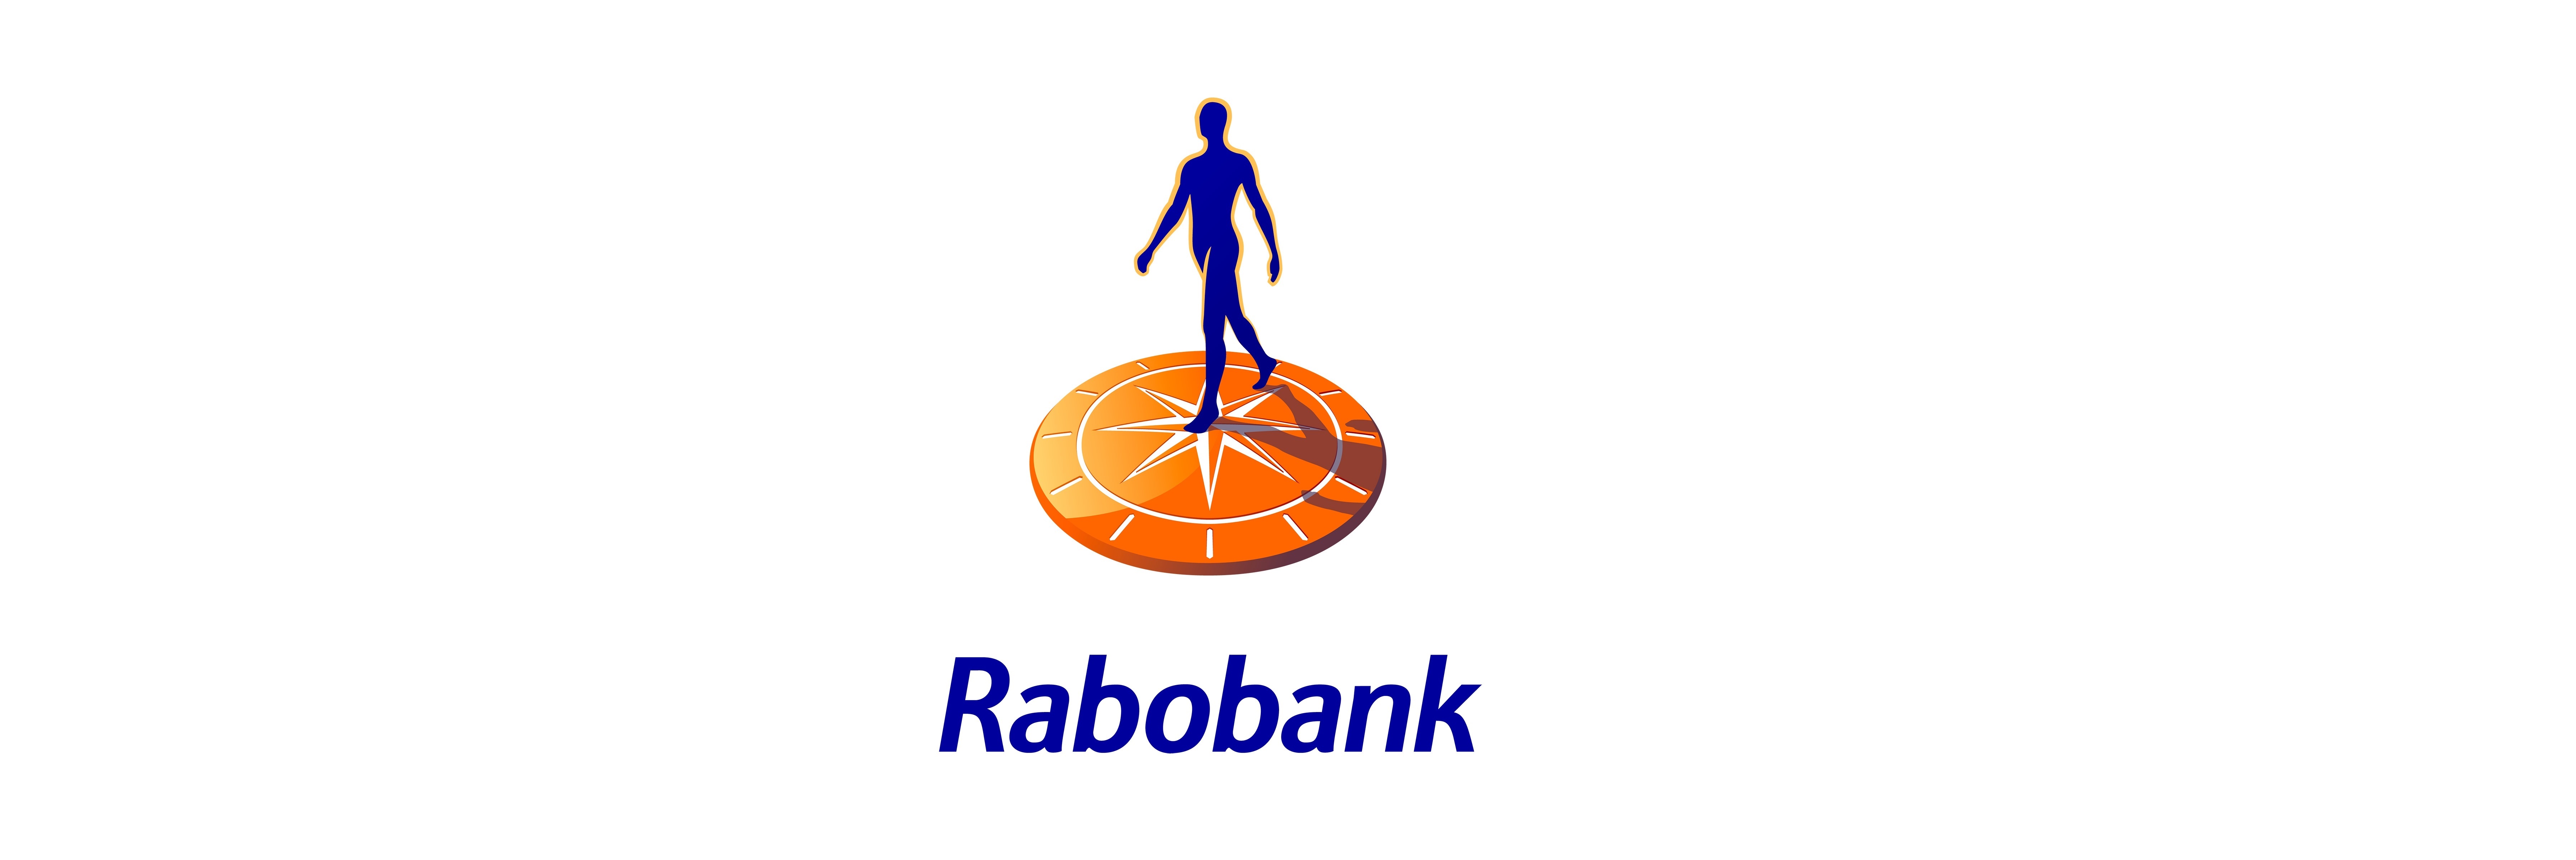 rabobank.nl business plan